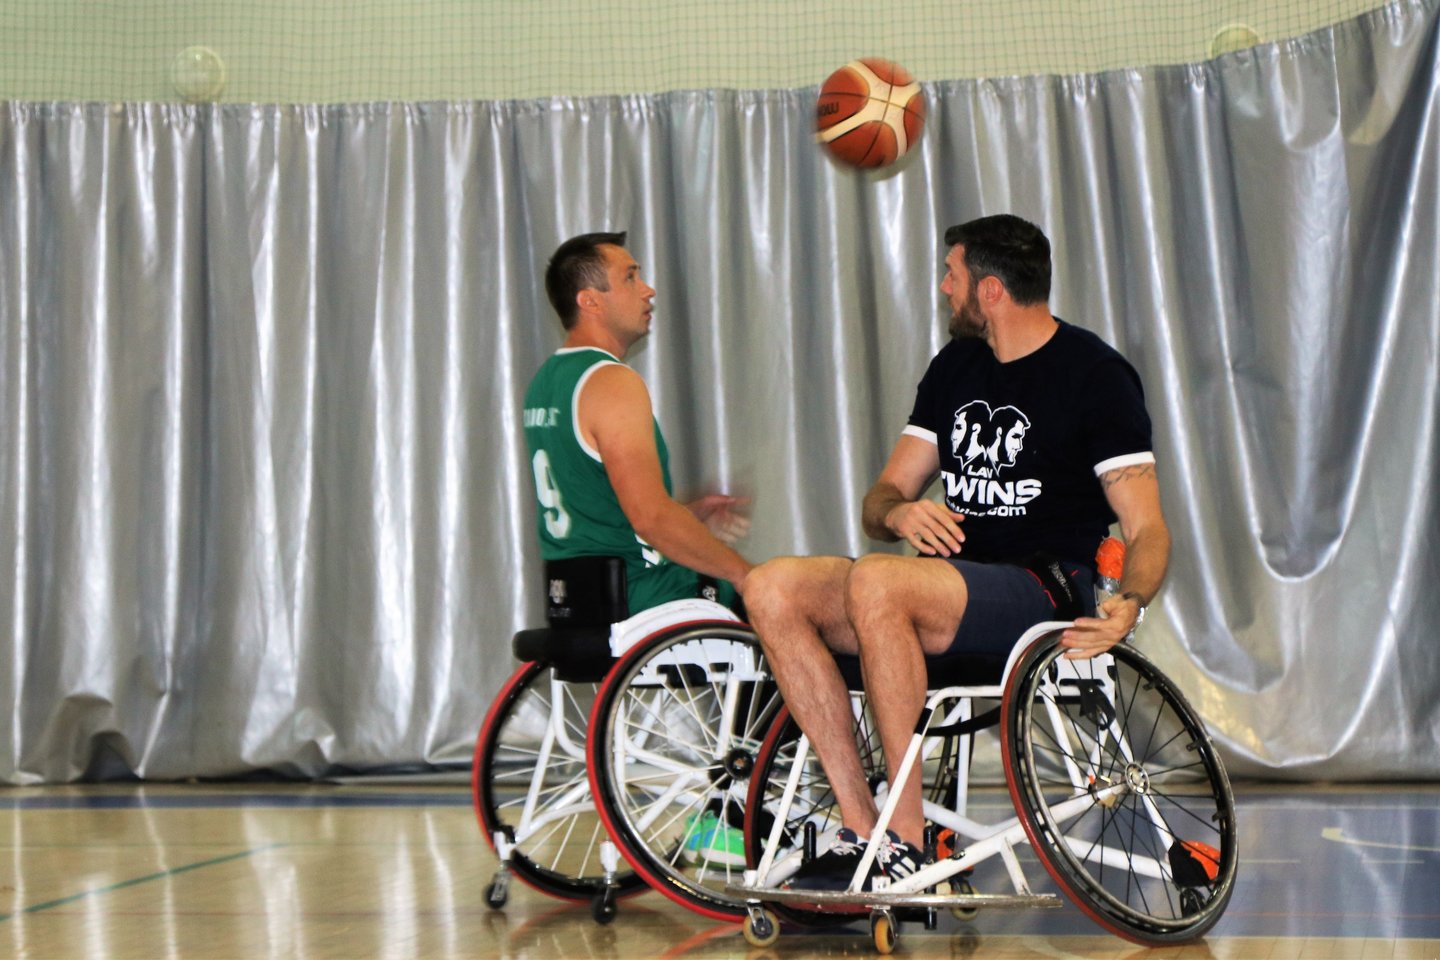  Broliai Lavrinovičiai prieš brolius Skučius vežimėlių krepšinyje<br> paralimpic.lt nuotr.